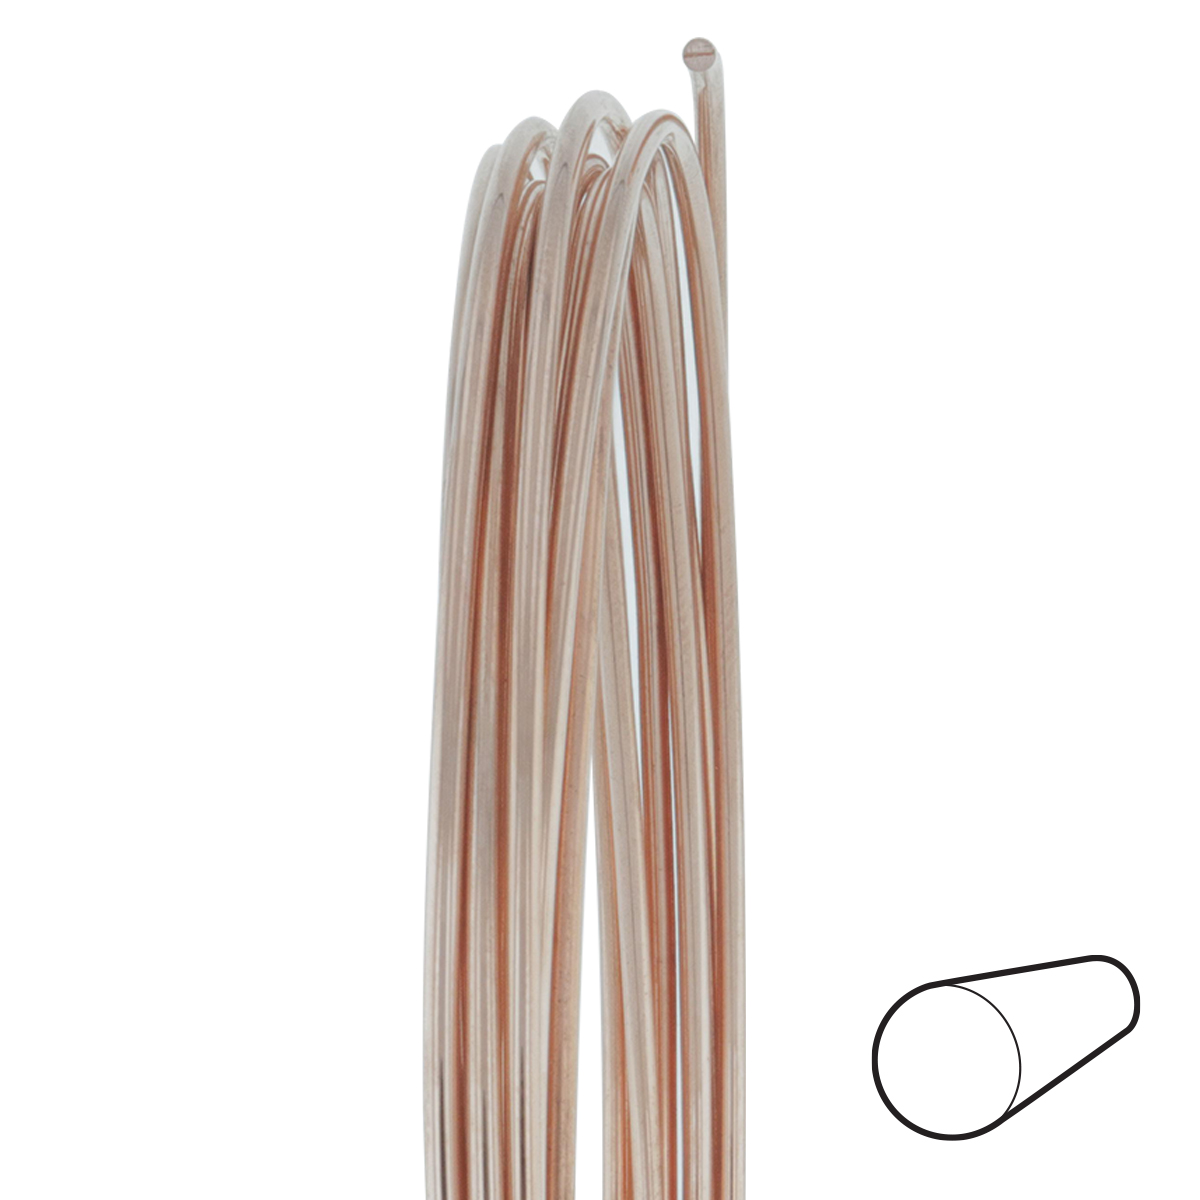 16 Gauge Half Round Half Hard Copper Wire: Wire Jewelry, Wire Wrap  Tutorials